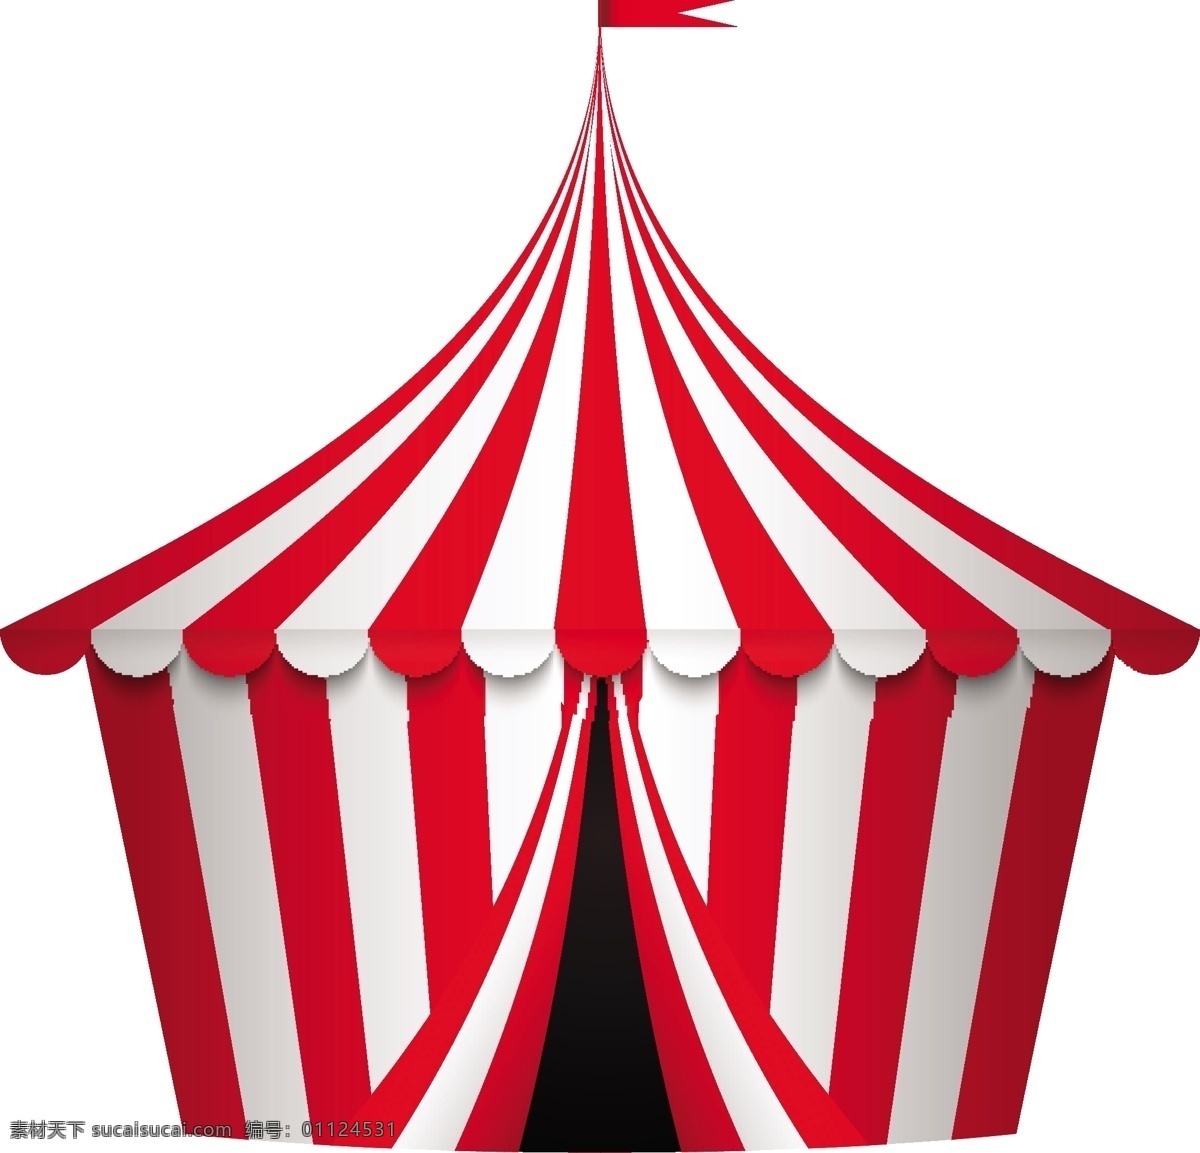 红色 马戏团 帐篷 矢量 模板下载 舞台 条纹 生活百科 矢量素材 白色